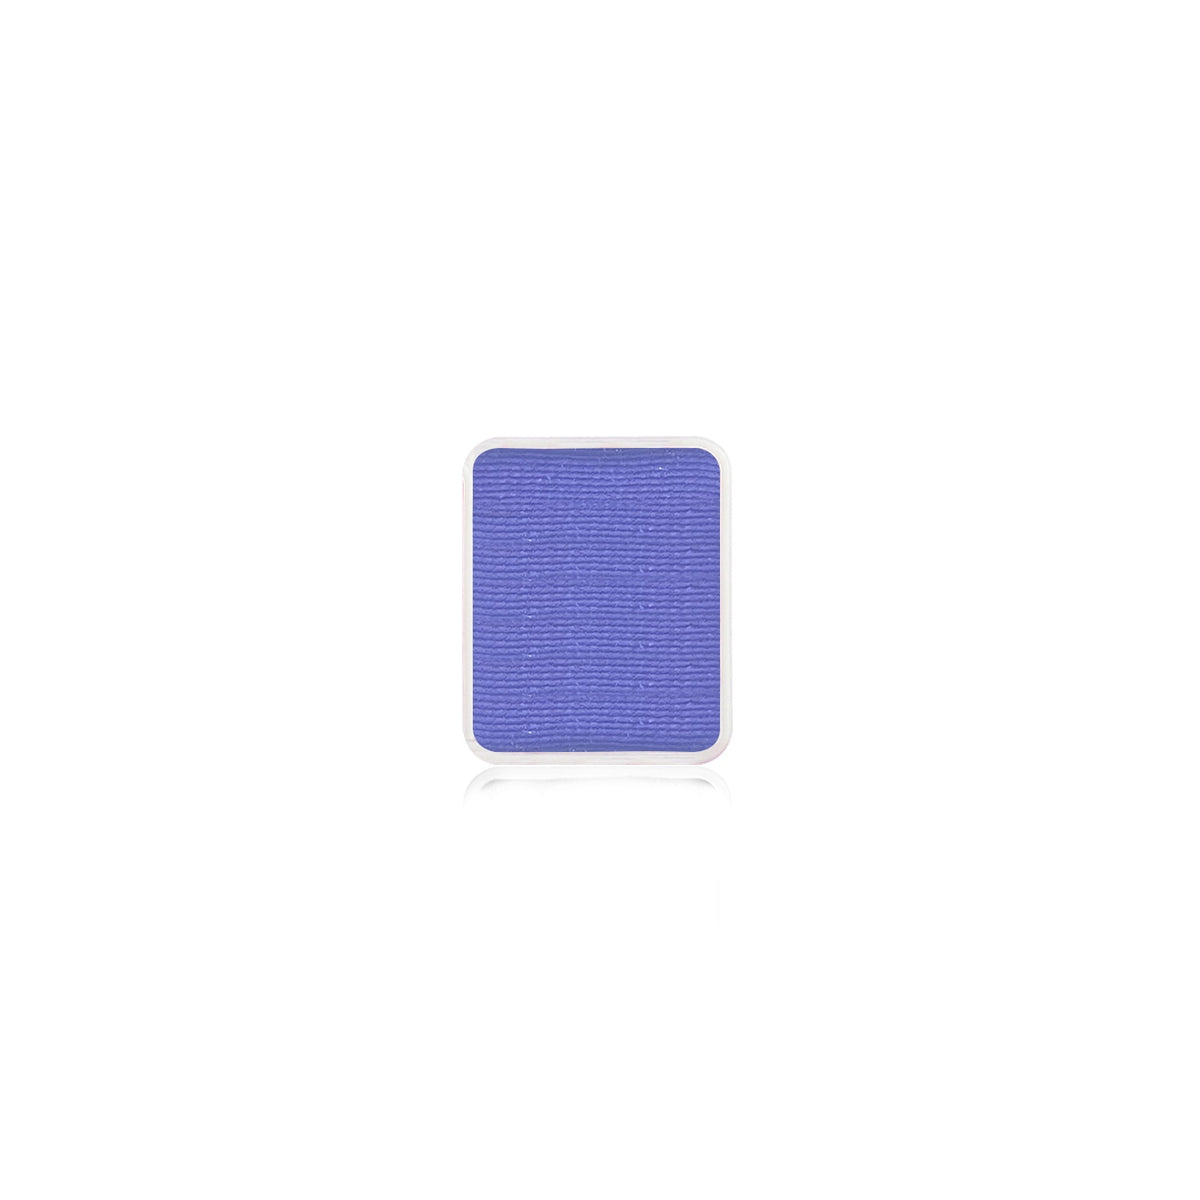 Kraze FX Face Paint Palette Refill - Purple (0.21 oz/6 gm)